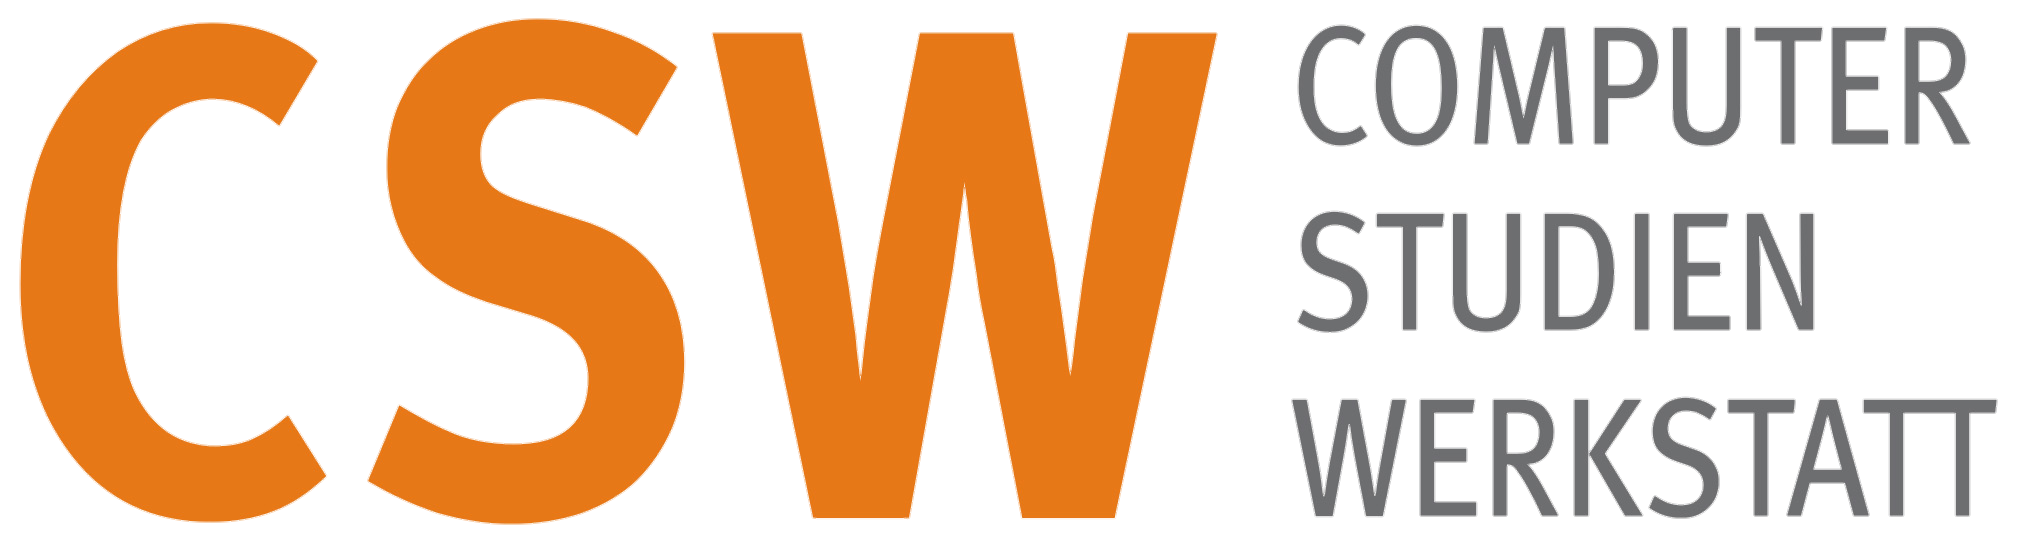 CSW-Logo